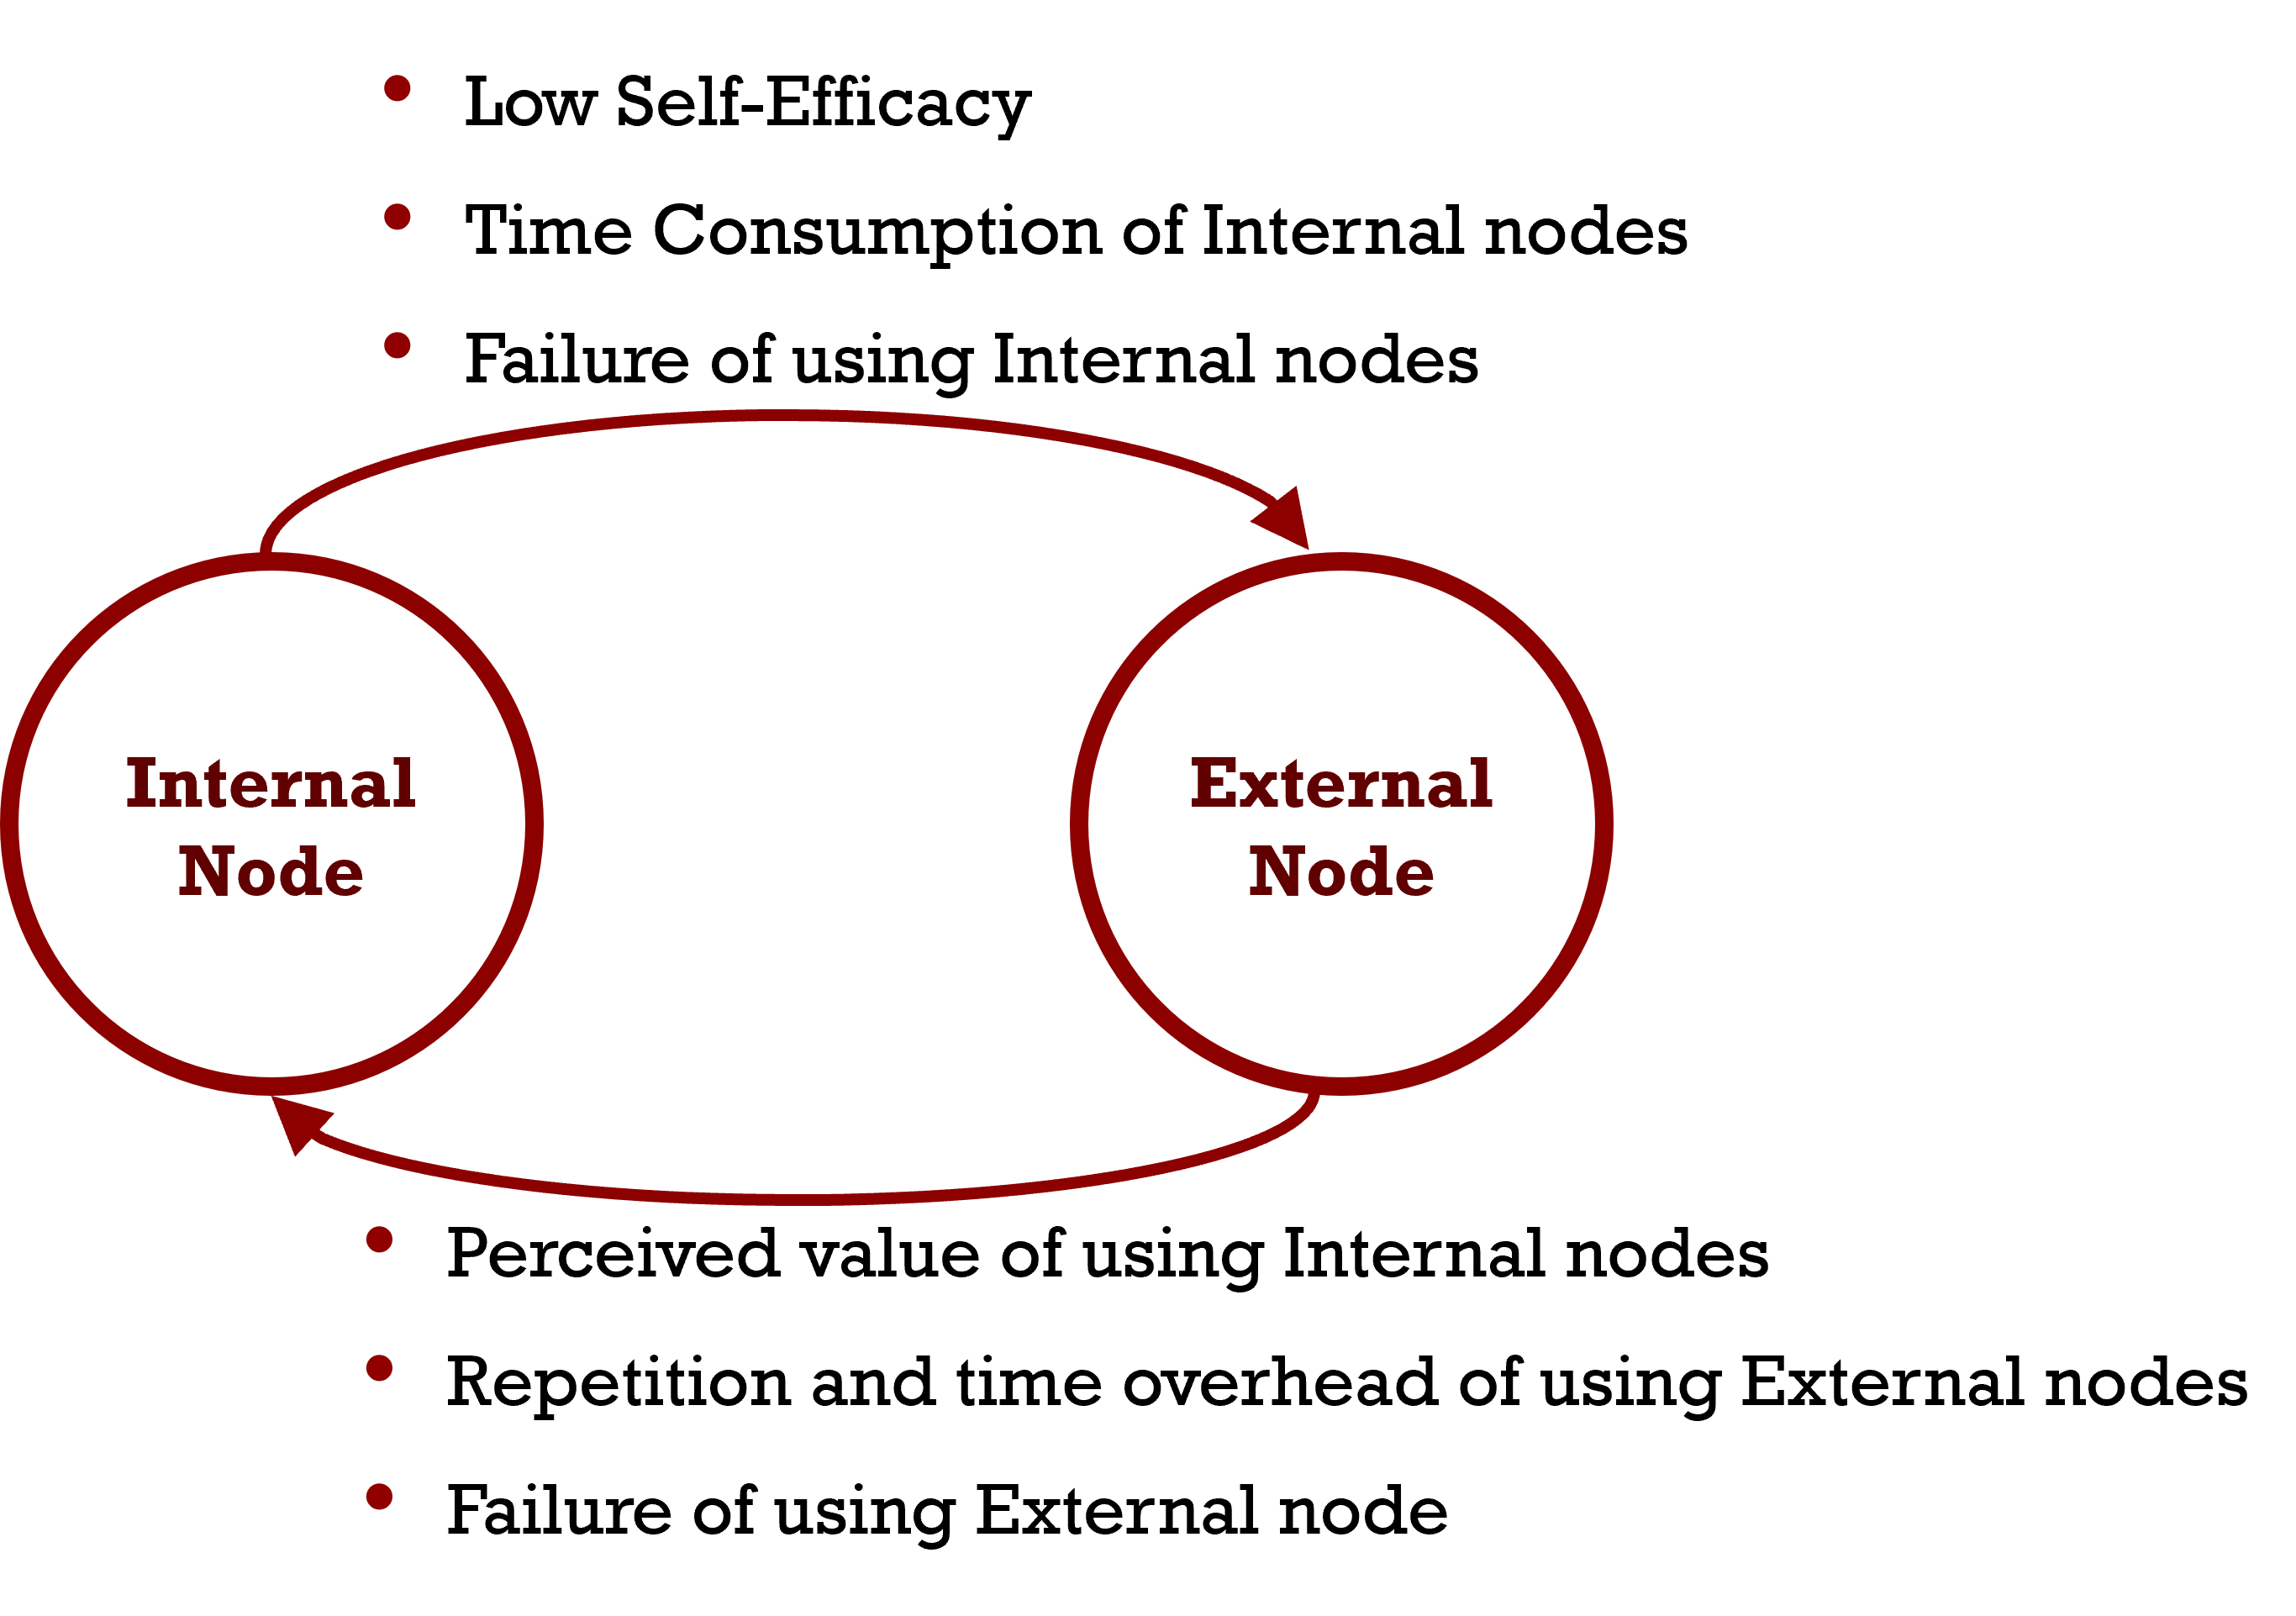 Internal and external node interaction model